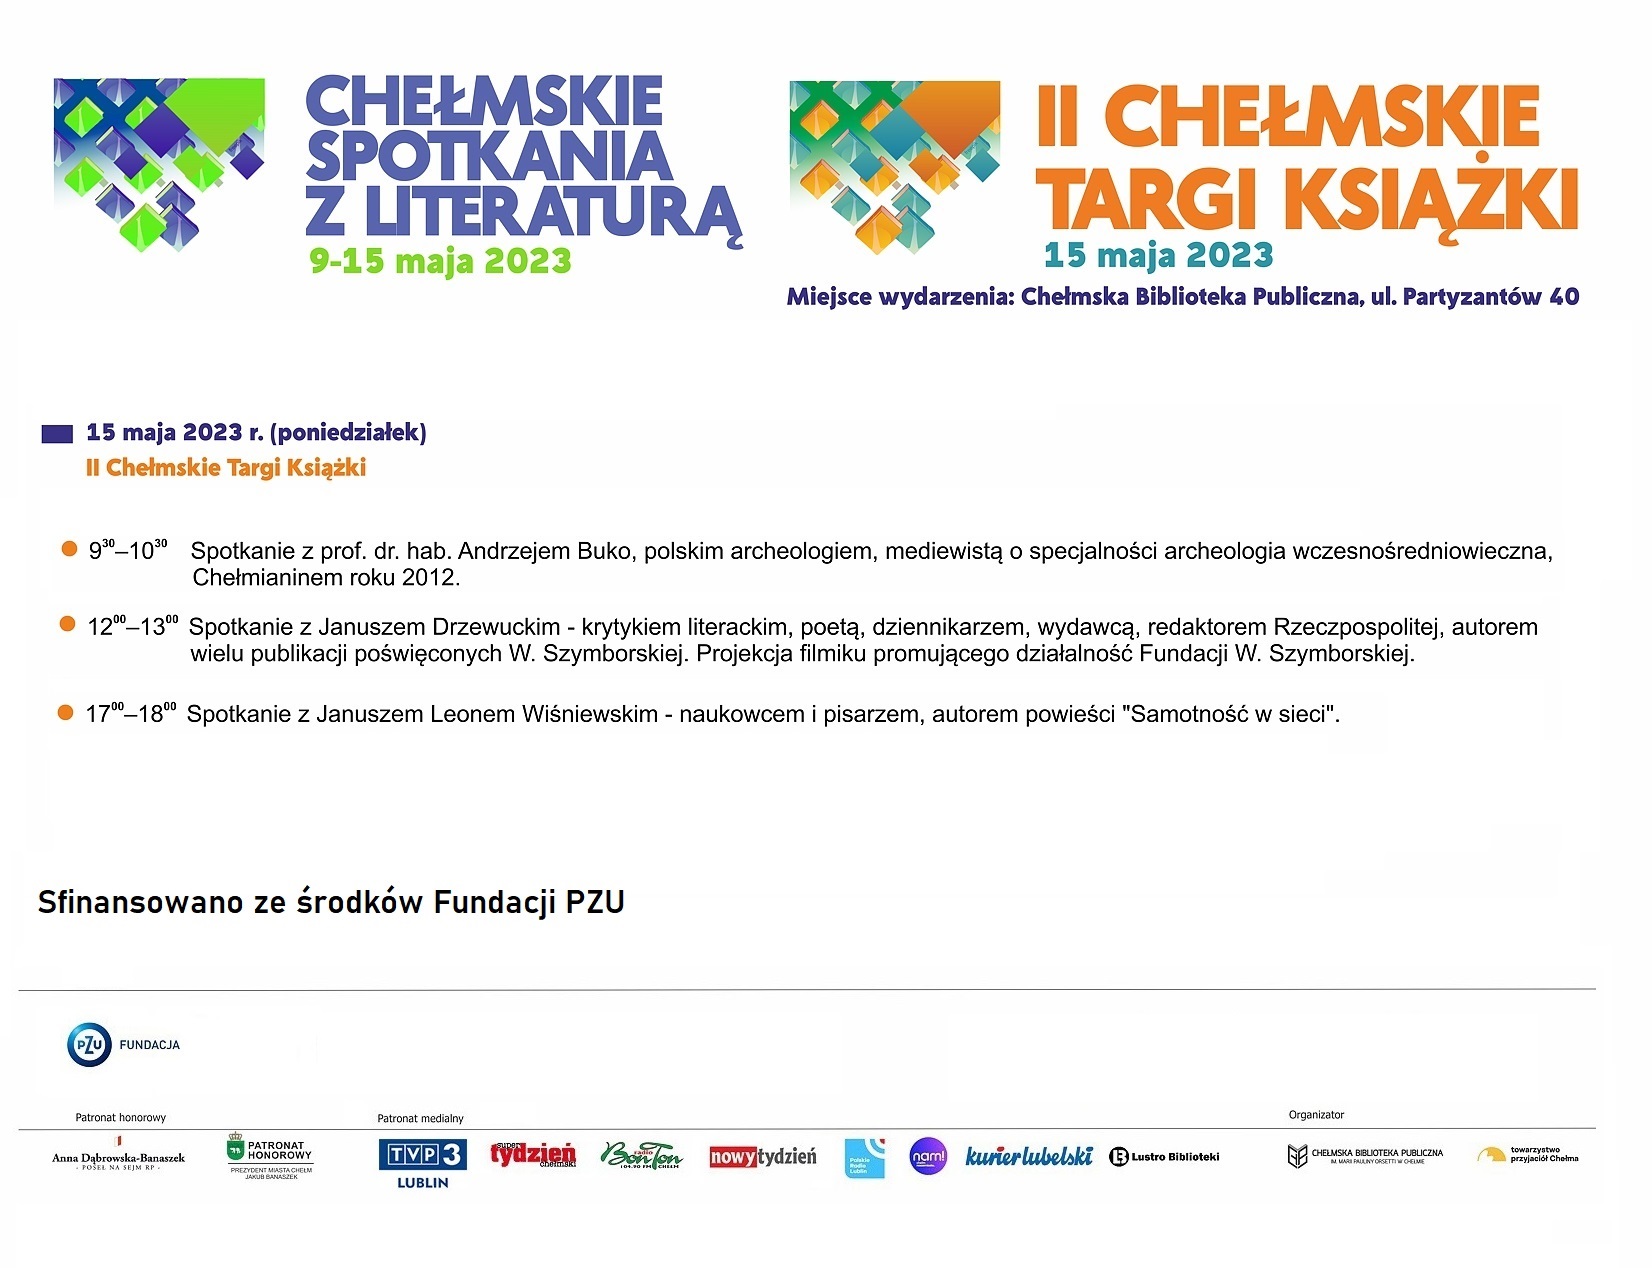 Program wydarzeń Chełmskich spotkań z literaturą i II Chełmskich Targów Książki w dniu 15 maja 2023 r. Część wydarzeń z Chełmskich Spotkań z Literaturą sfinansowano ze środków Fundacji PZU